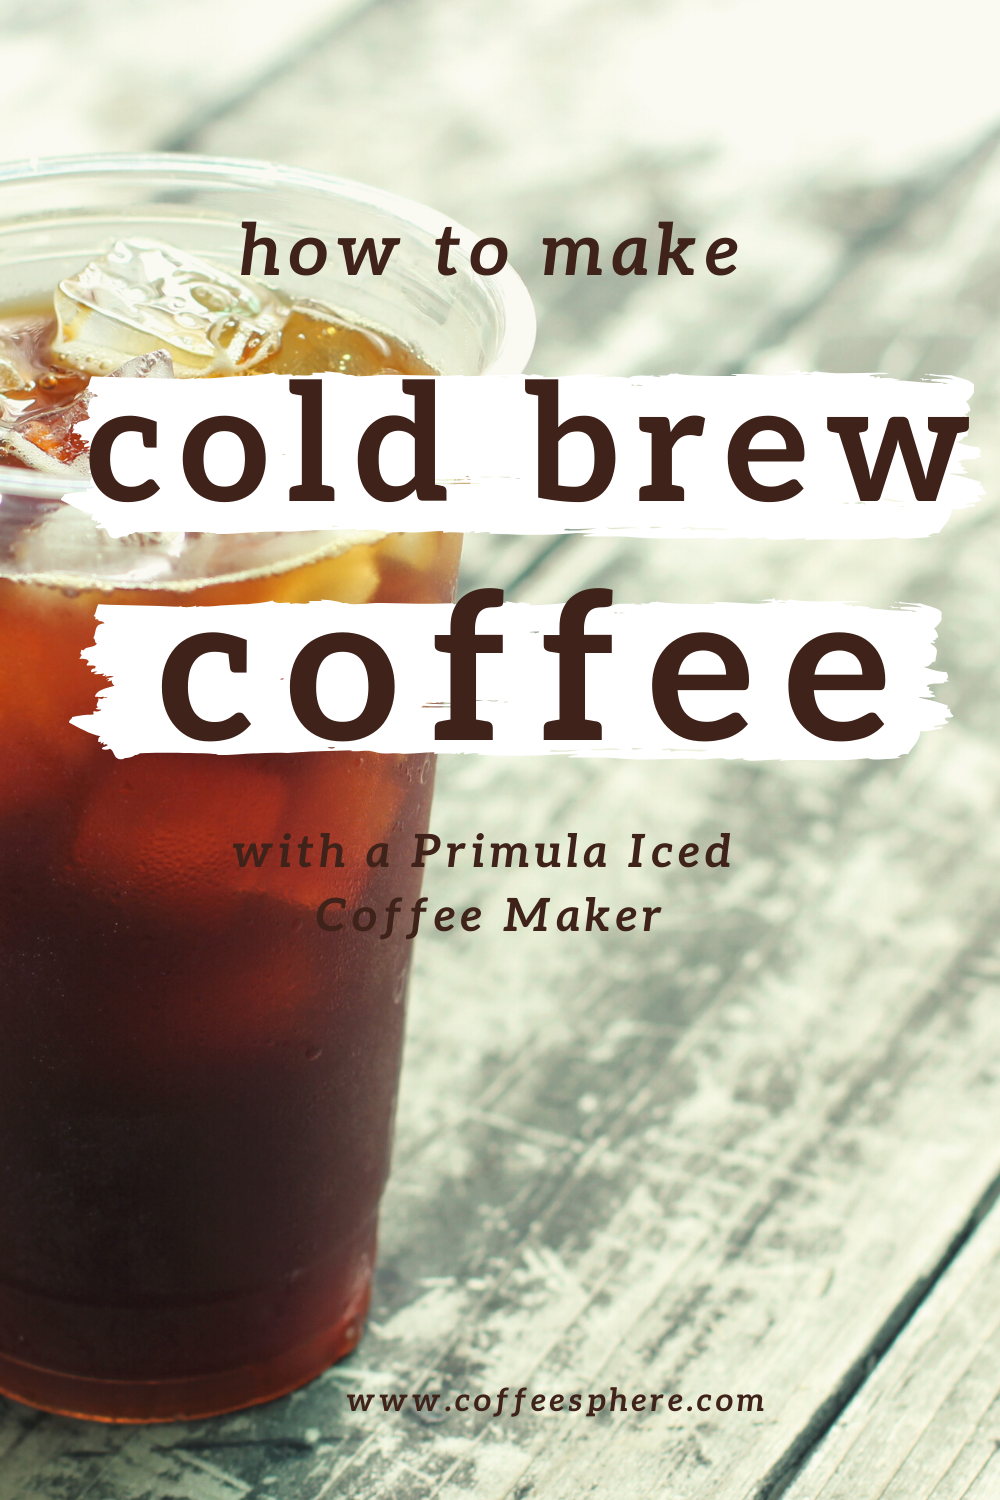 Primula Cold Brew Coffee Maker 1.6 Qt New In Box, Glass Pitcher